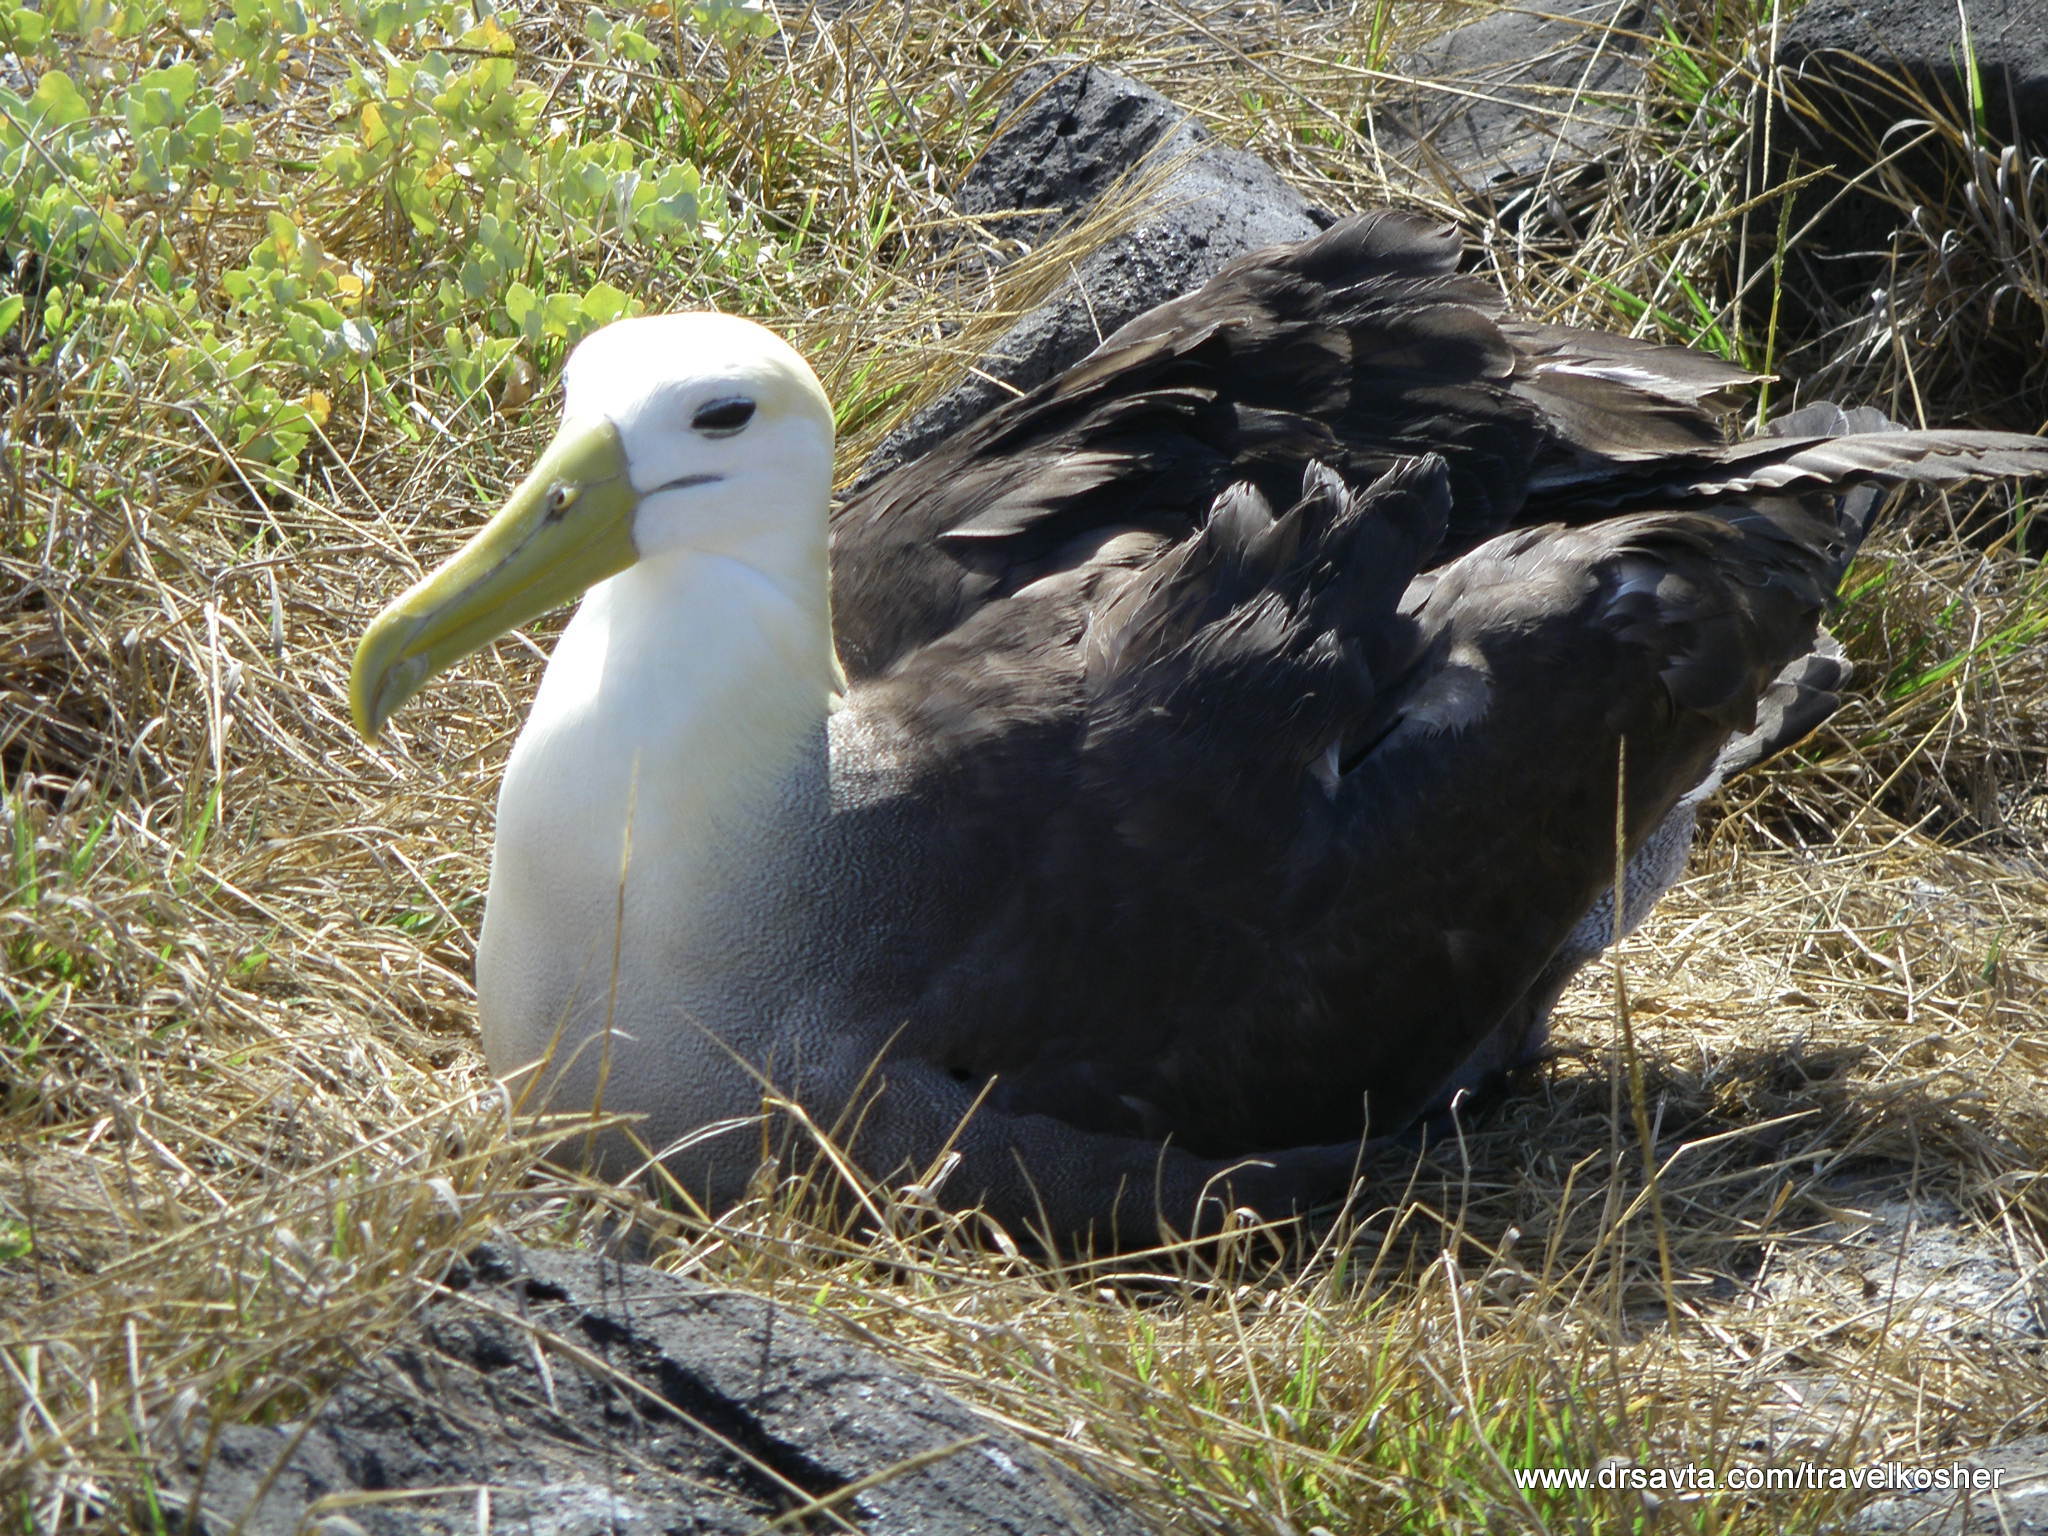 An Albatross